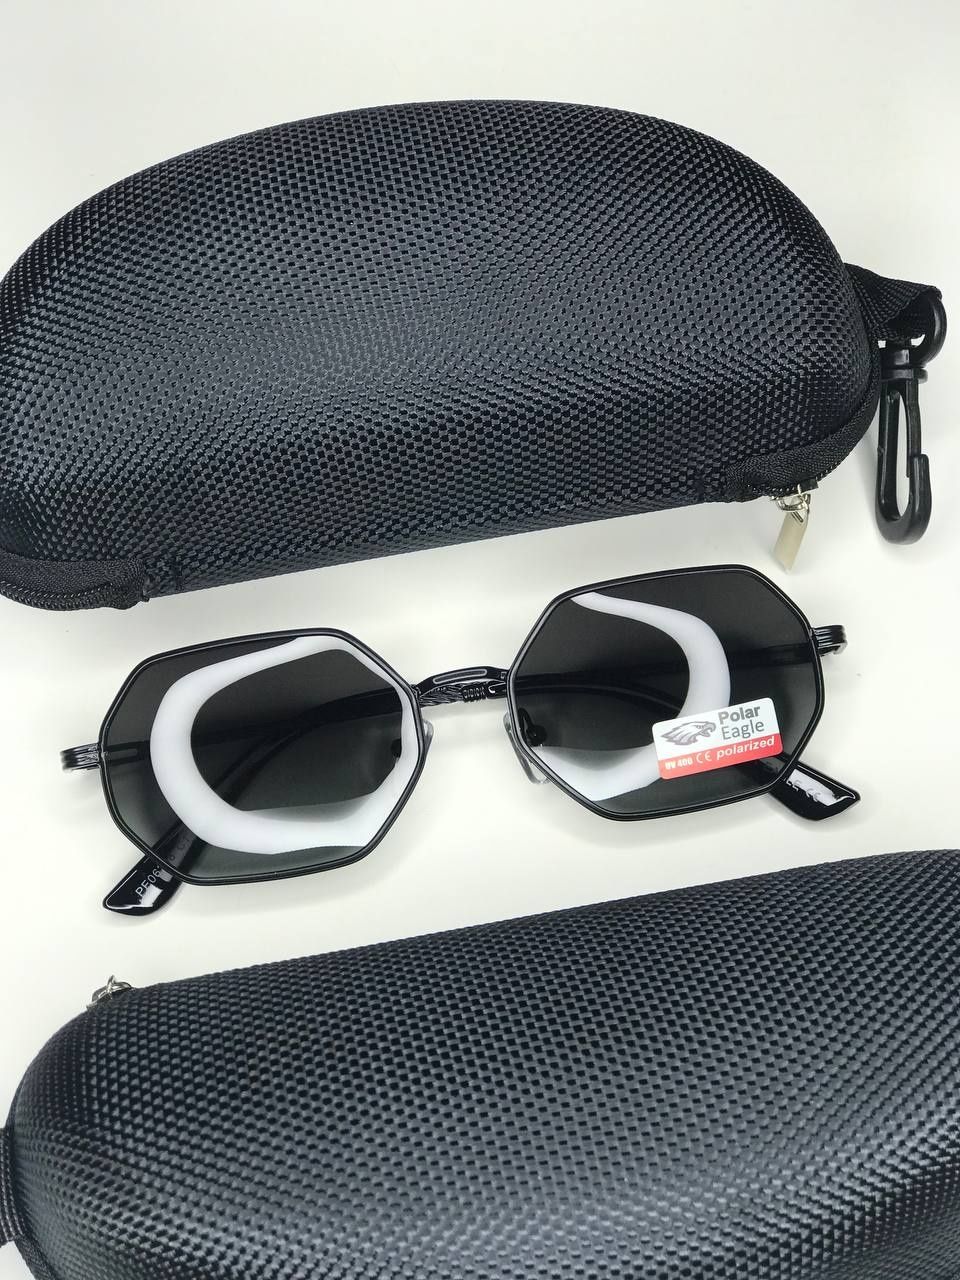 Солнцезащитные очки Octagonal черные фигурные унисекс с поляризацией